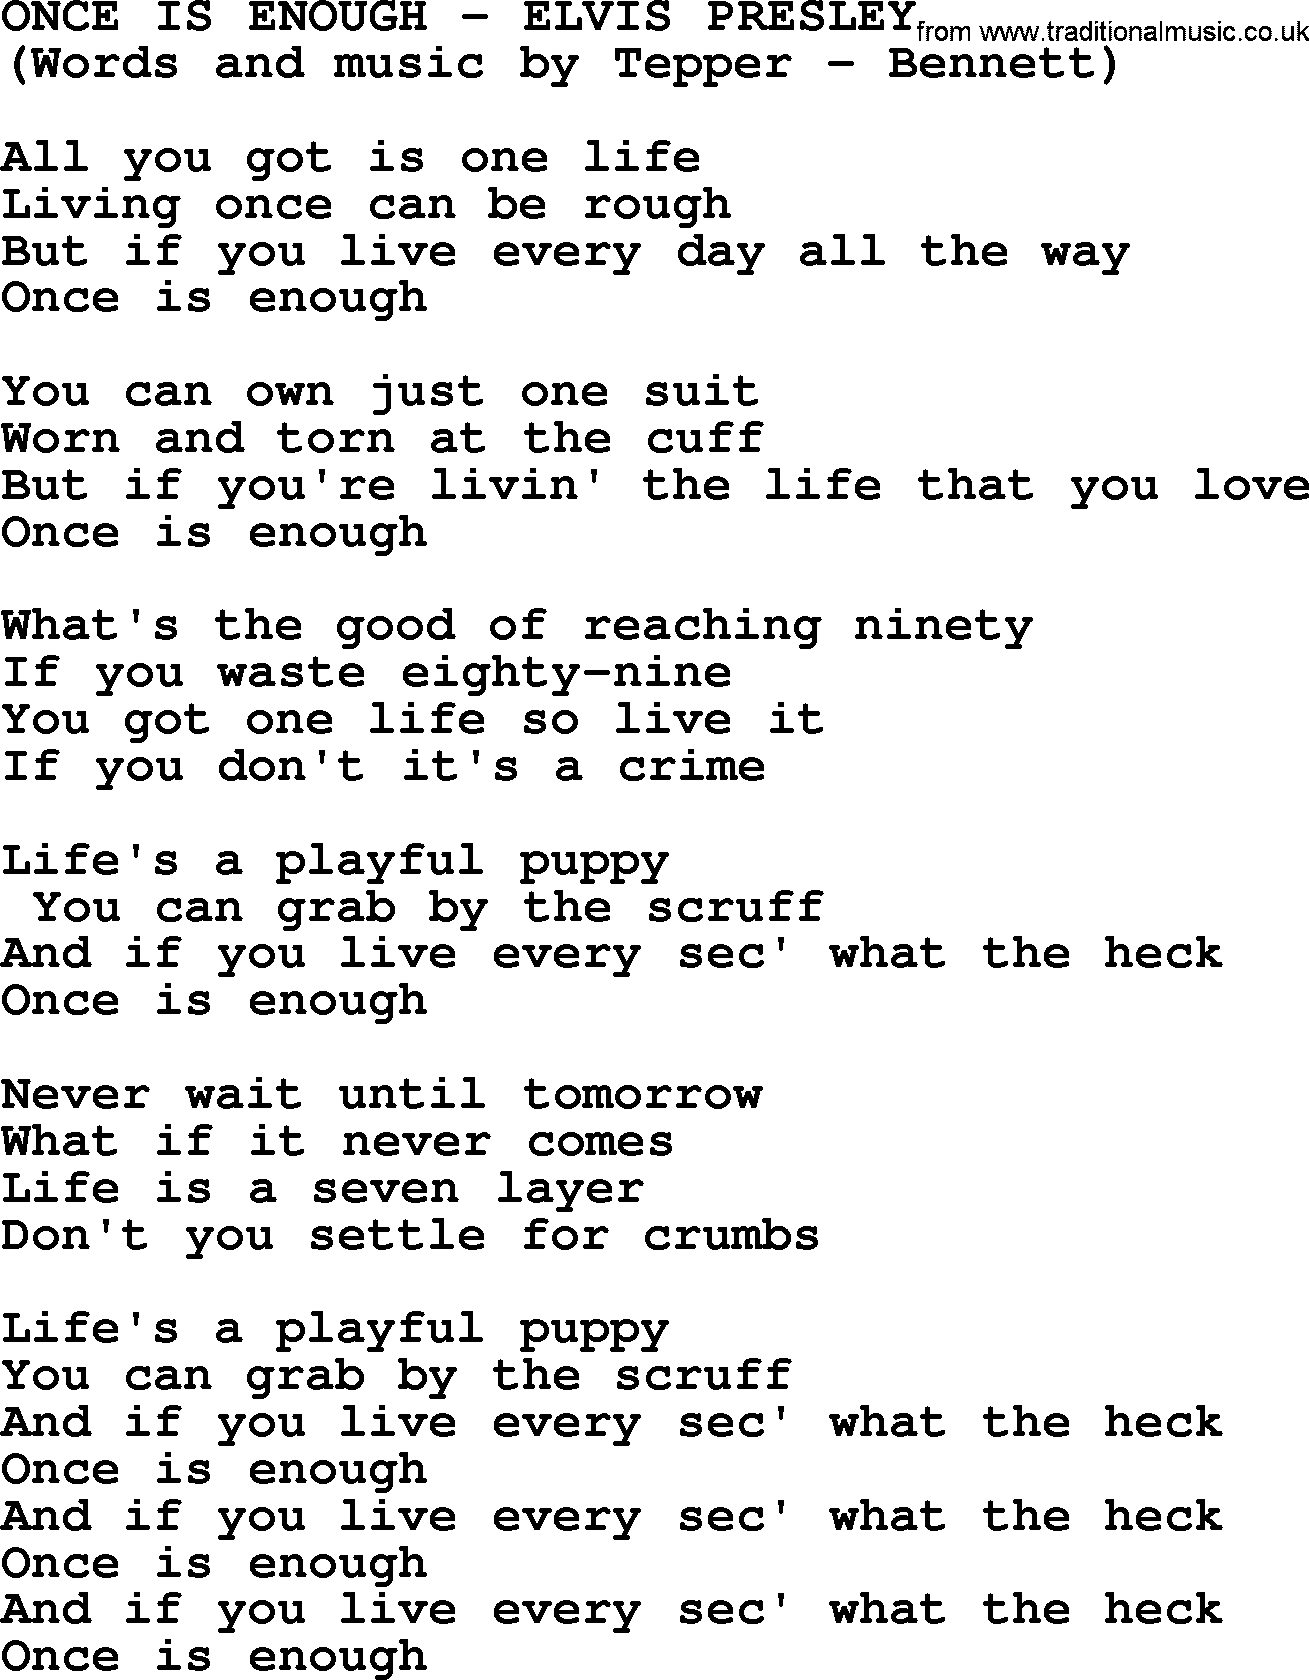 Elvis Presley song: Once Is Enough lyrics